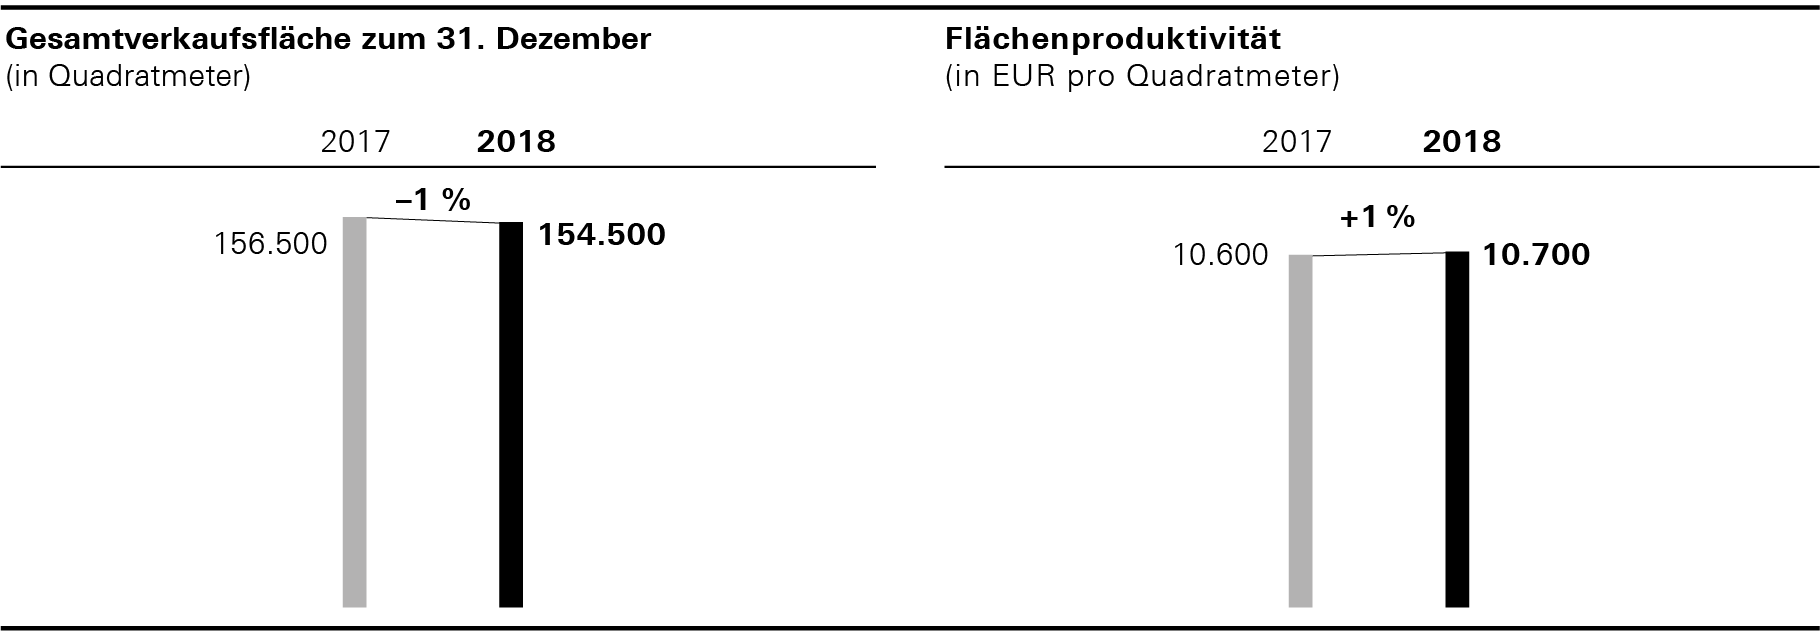 Gesamtverkaufsfläche zum 31. Dezember und Flächenproduktivität (Balkendiagramm)